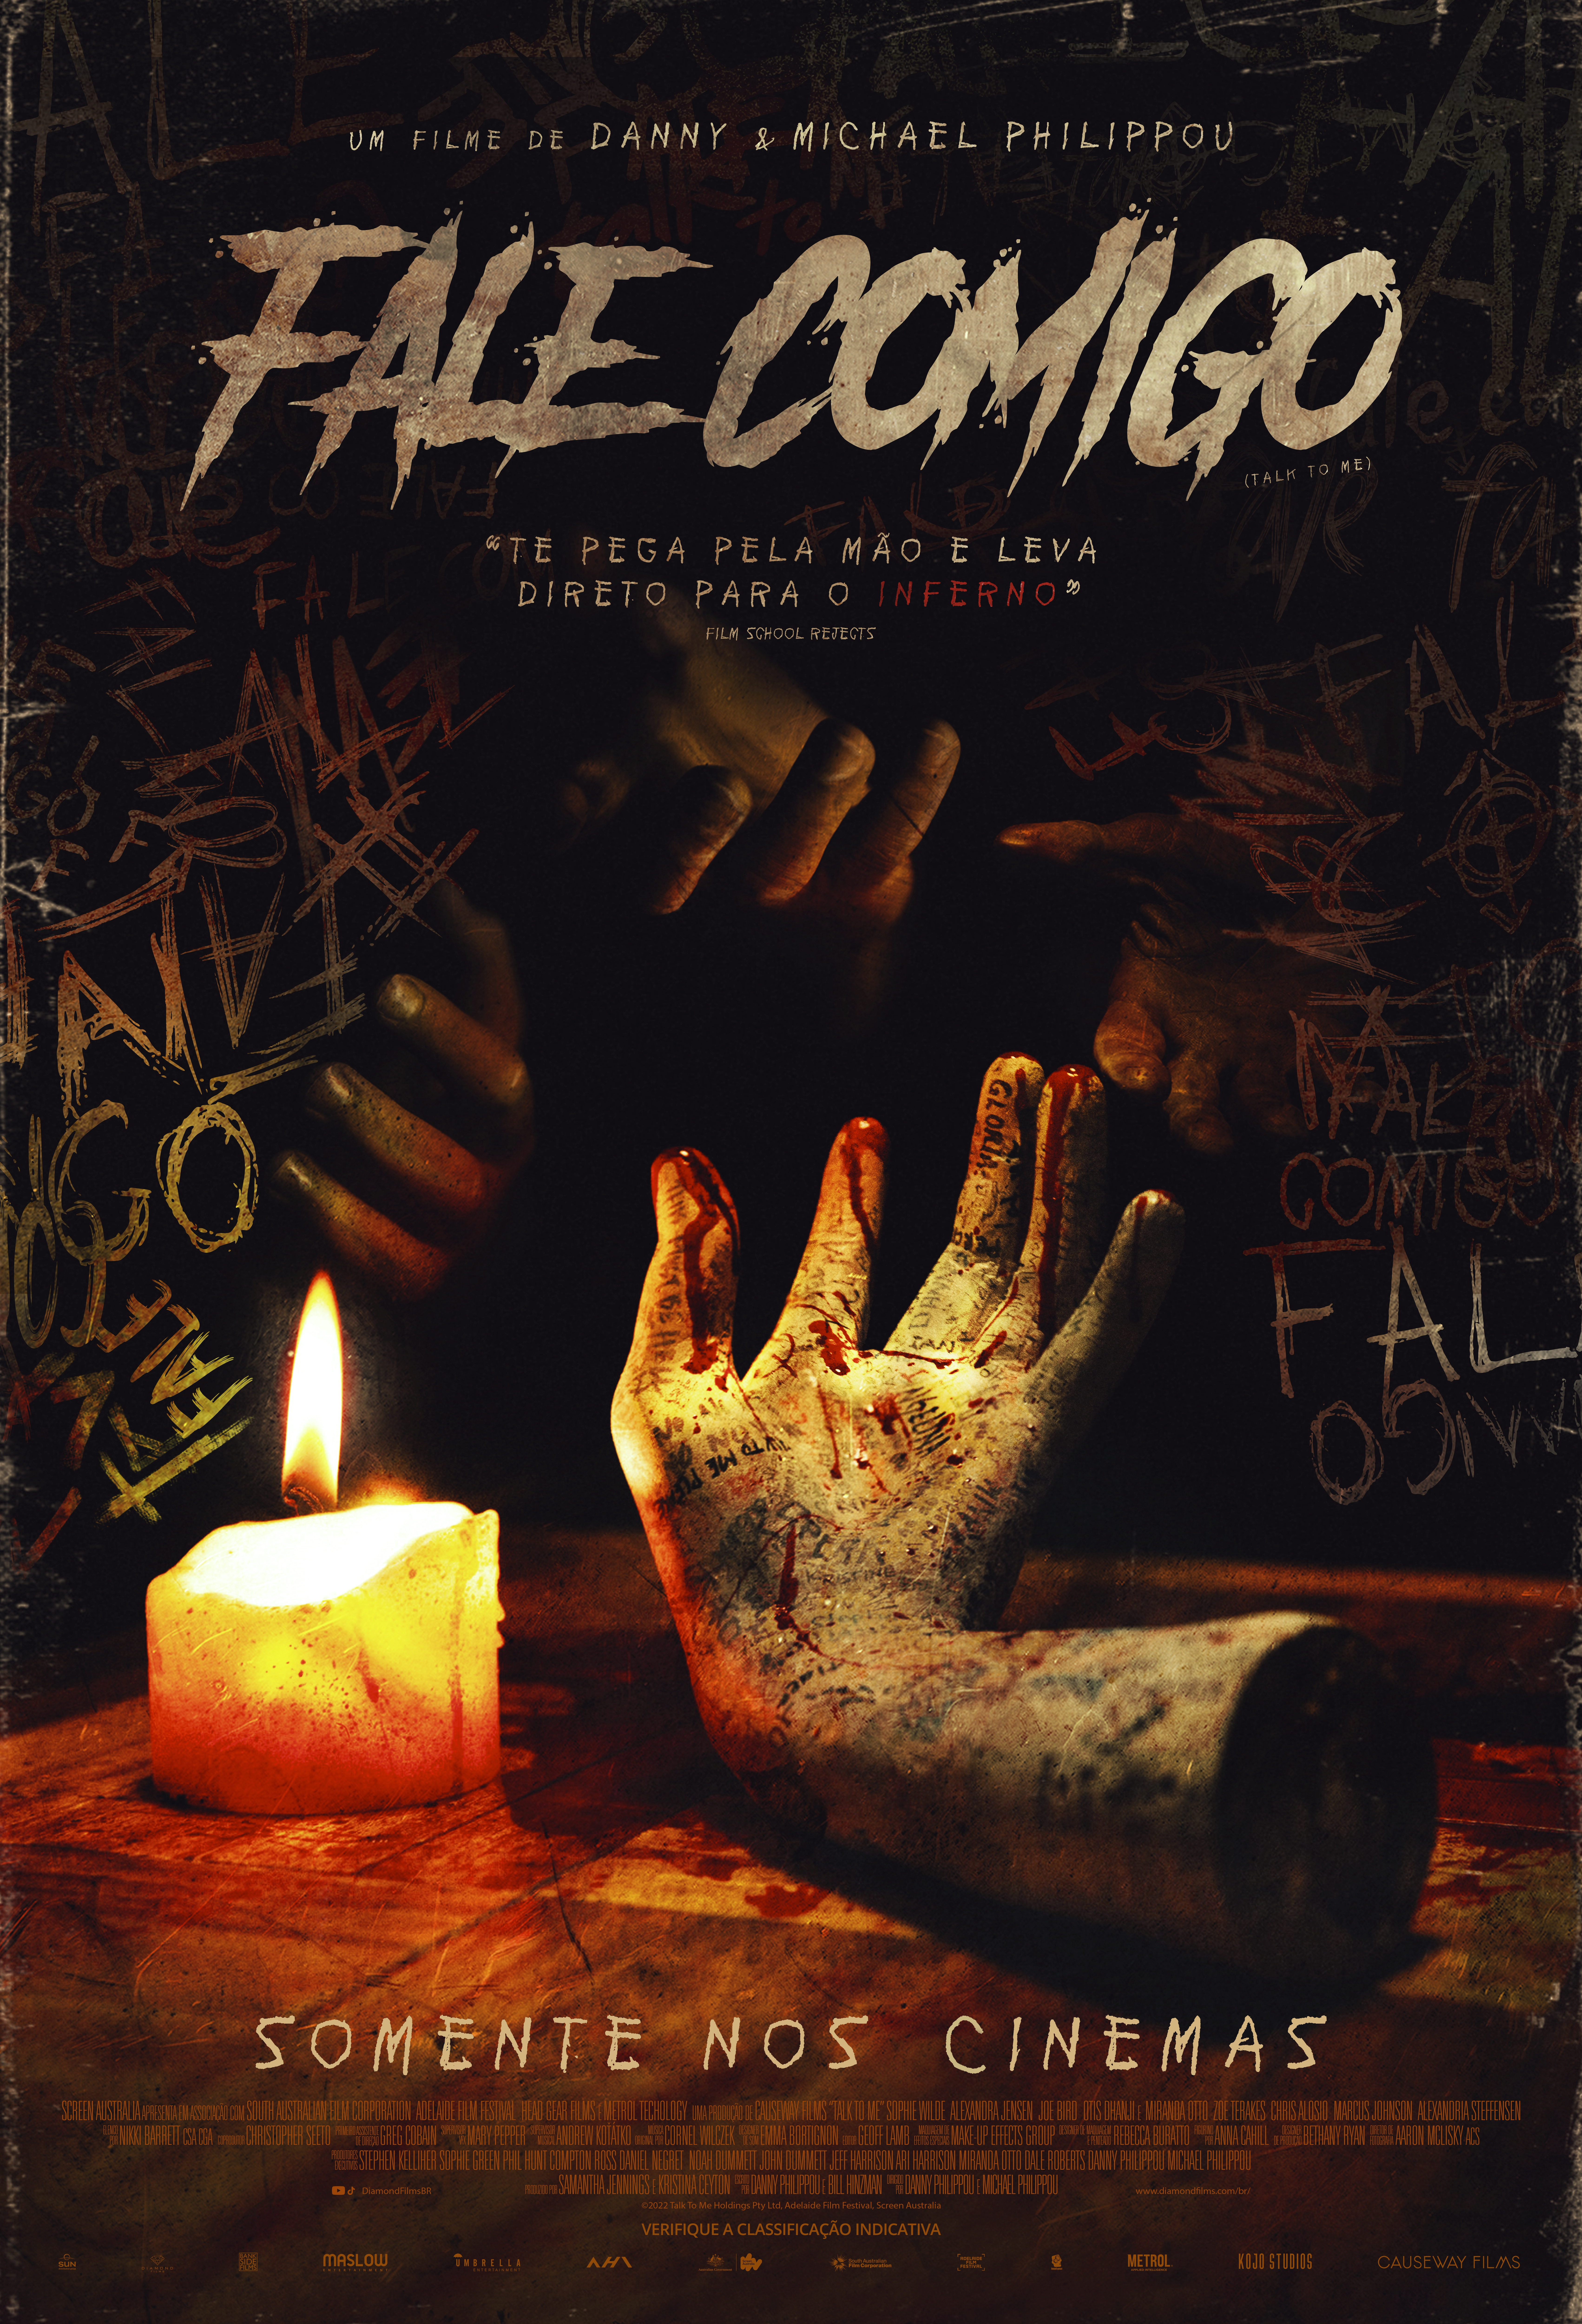 Novo terror da A24, "Fale Comigo" ganha pôster criado por designer brasileiro (Foto: Divulgação/Diamond Films)